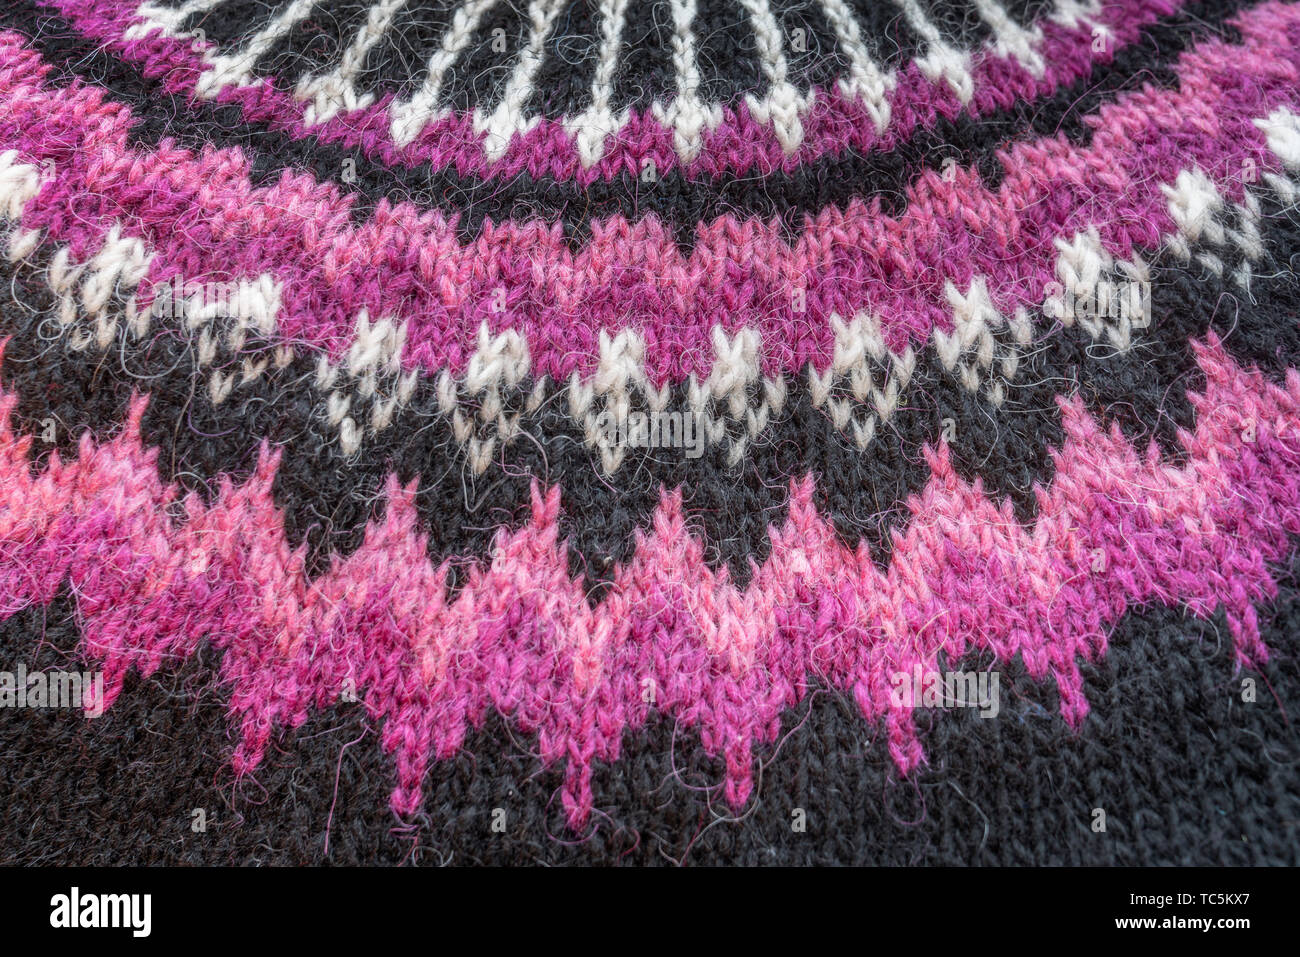 Chandails de laine traditionnels islandais, Islande la laine Lopi fabriqués à partir de la toison du mouton islandais. Banque D'Images